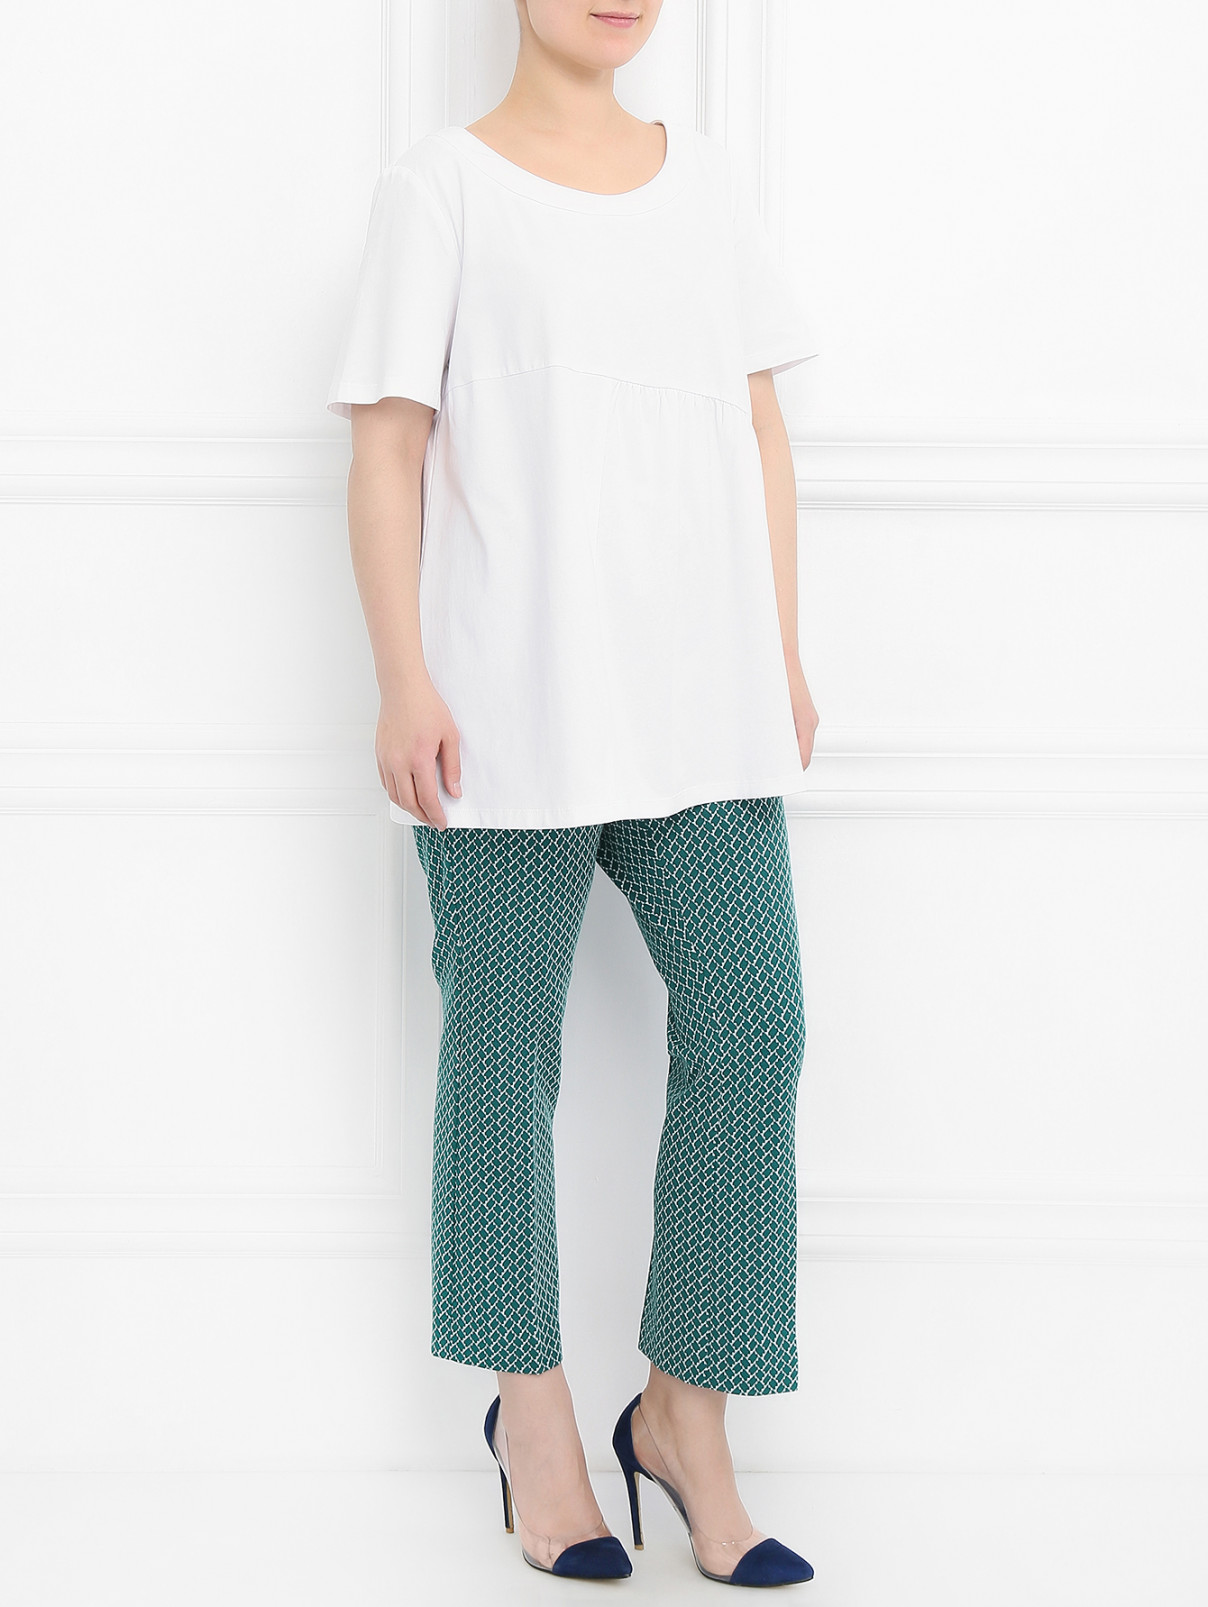 Укороченные брюки с узором Marina Sport  –  Модель Общий вид  – Цвет:  Зеленый